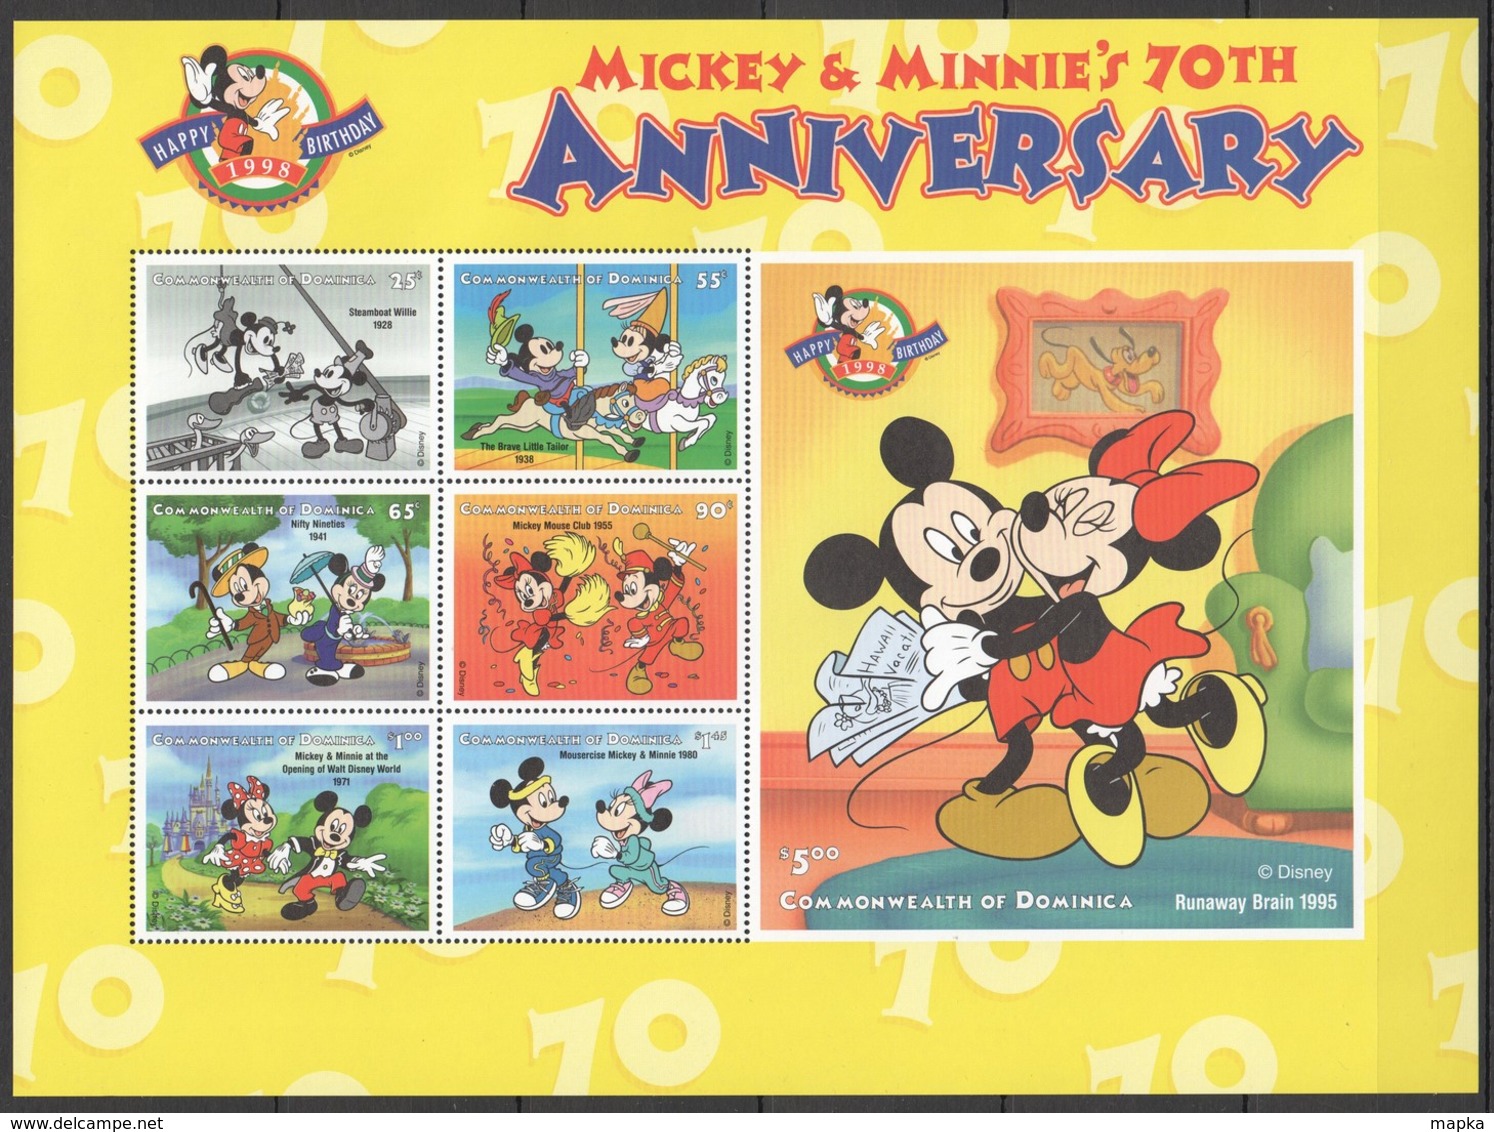 D308 DOMINICA CARTOONS WALT DISNEY MICKEY & MINNIE'S 70TH ANNIVERSARY 1998 1KB MNH - Disney